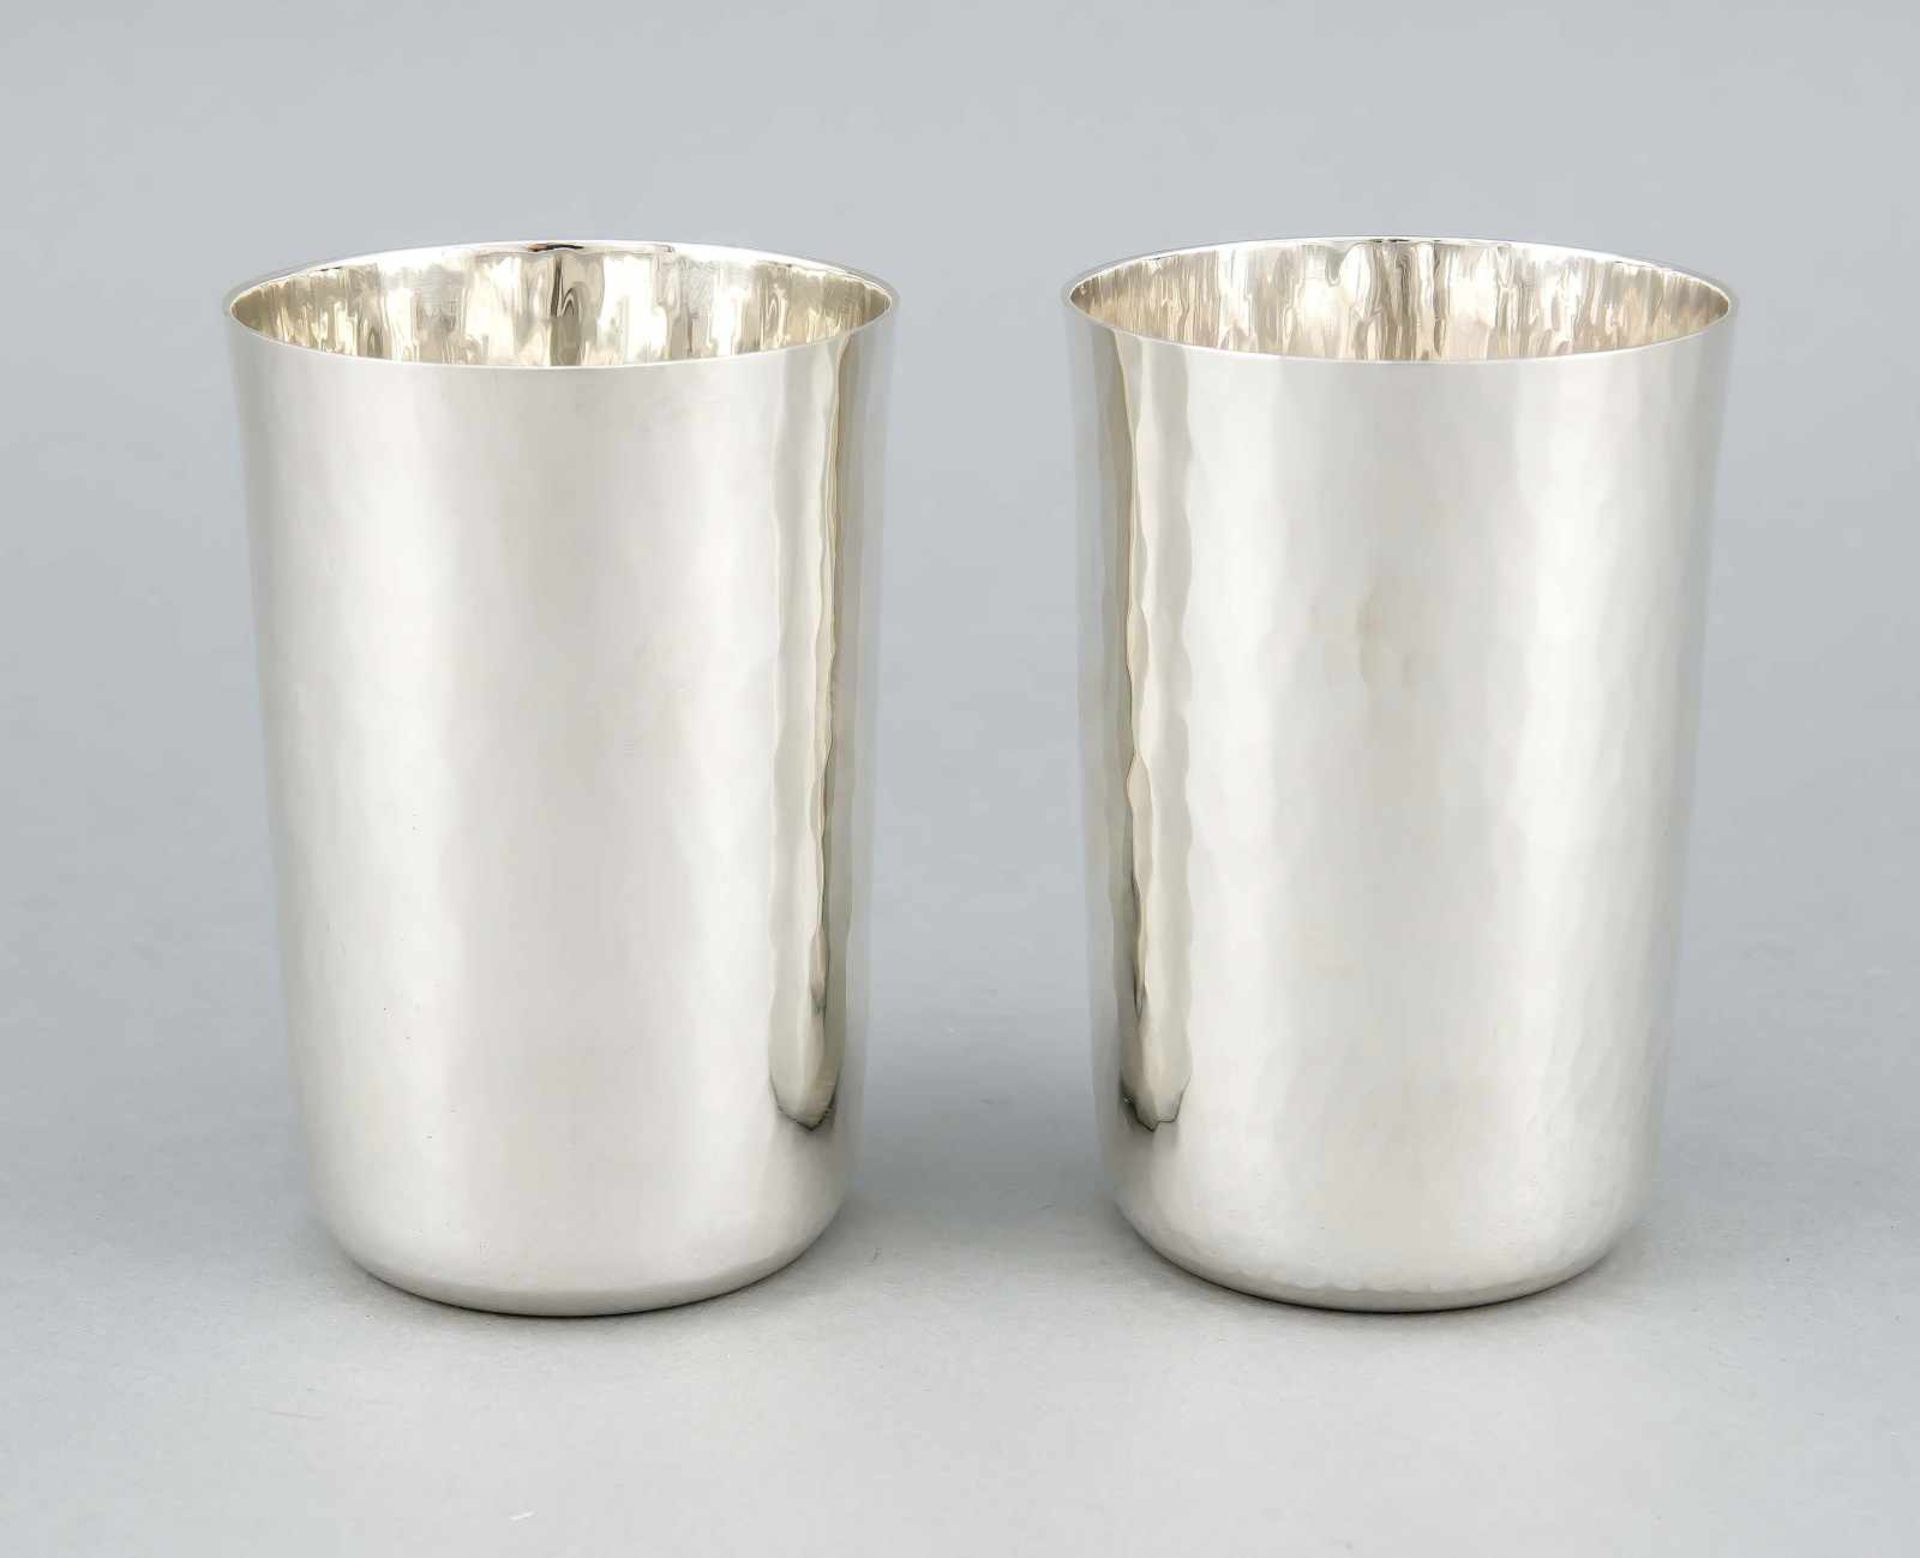 Paar Becher, USA, 2. H. 20. Jh., MZ: Tiffany & Co., New York, Sterlingsilber 925/000, zylindrische